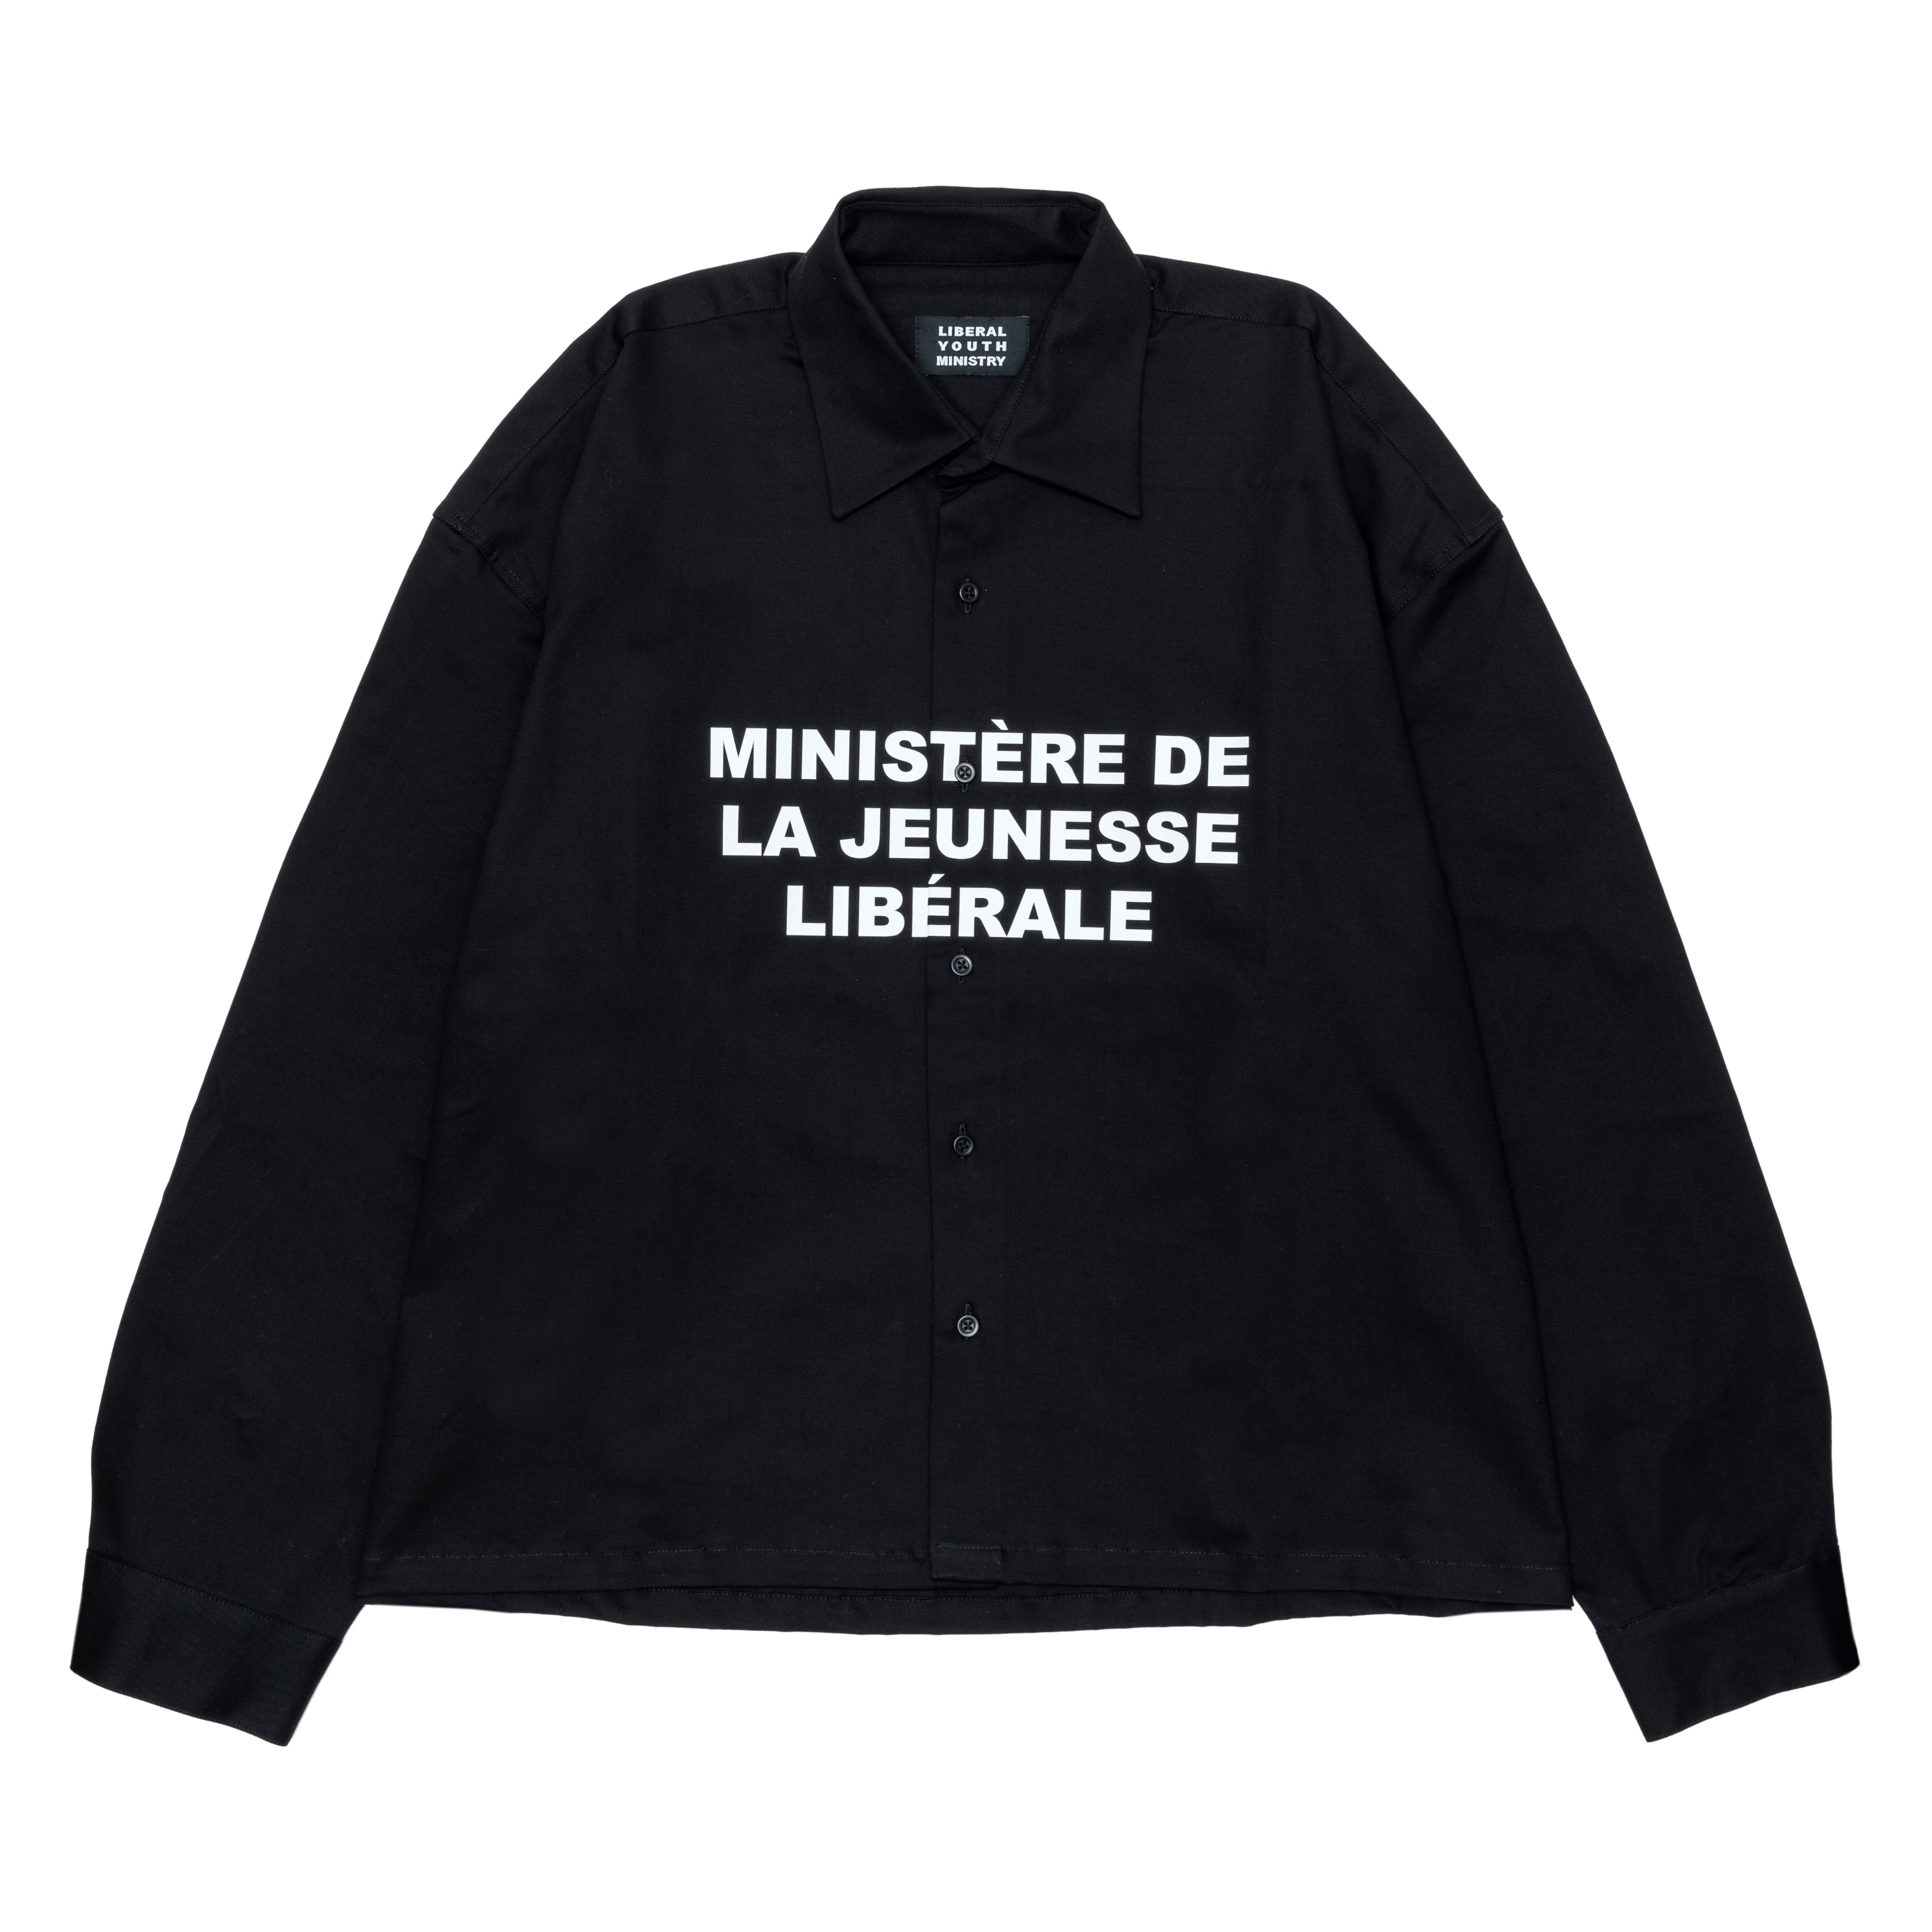 liberal youth ministry 中綿シャツ変更してよろしいでしょうか